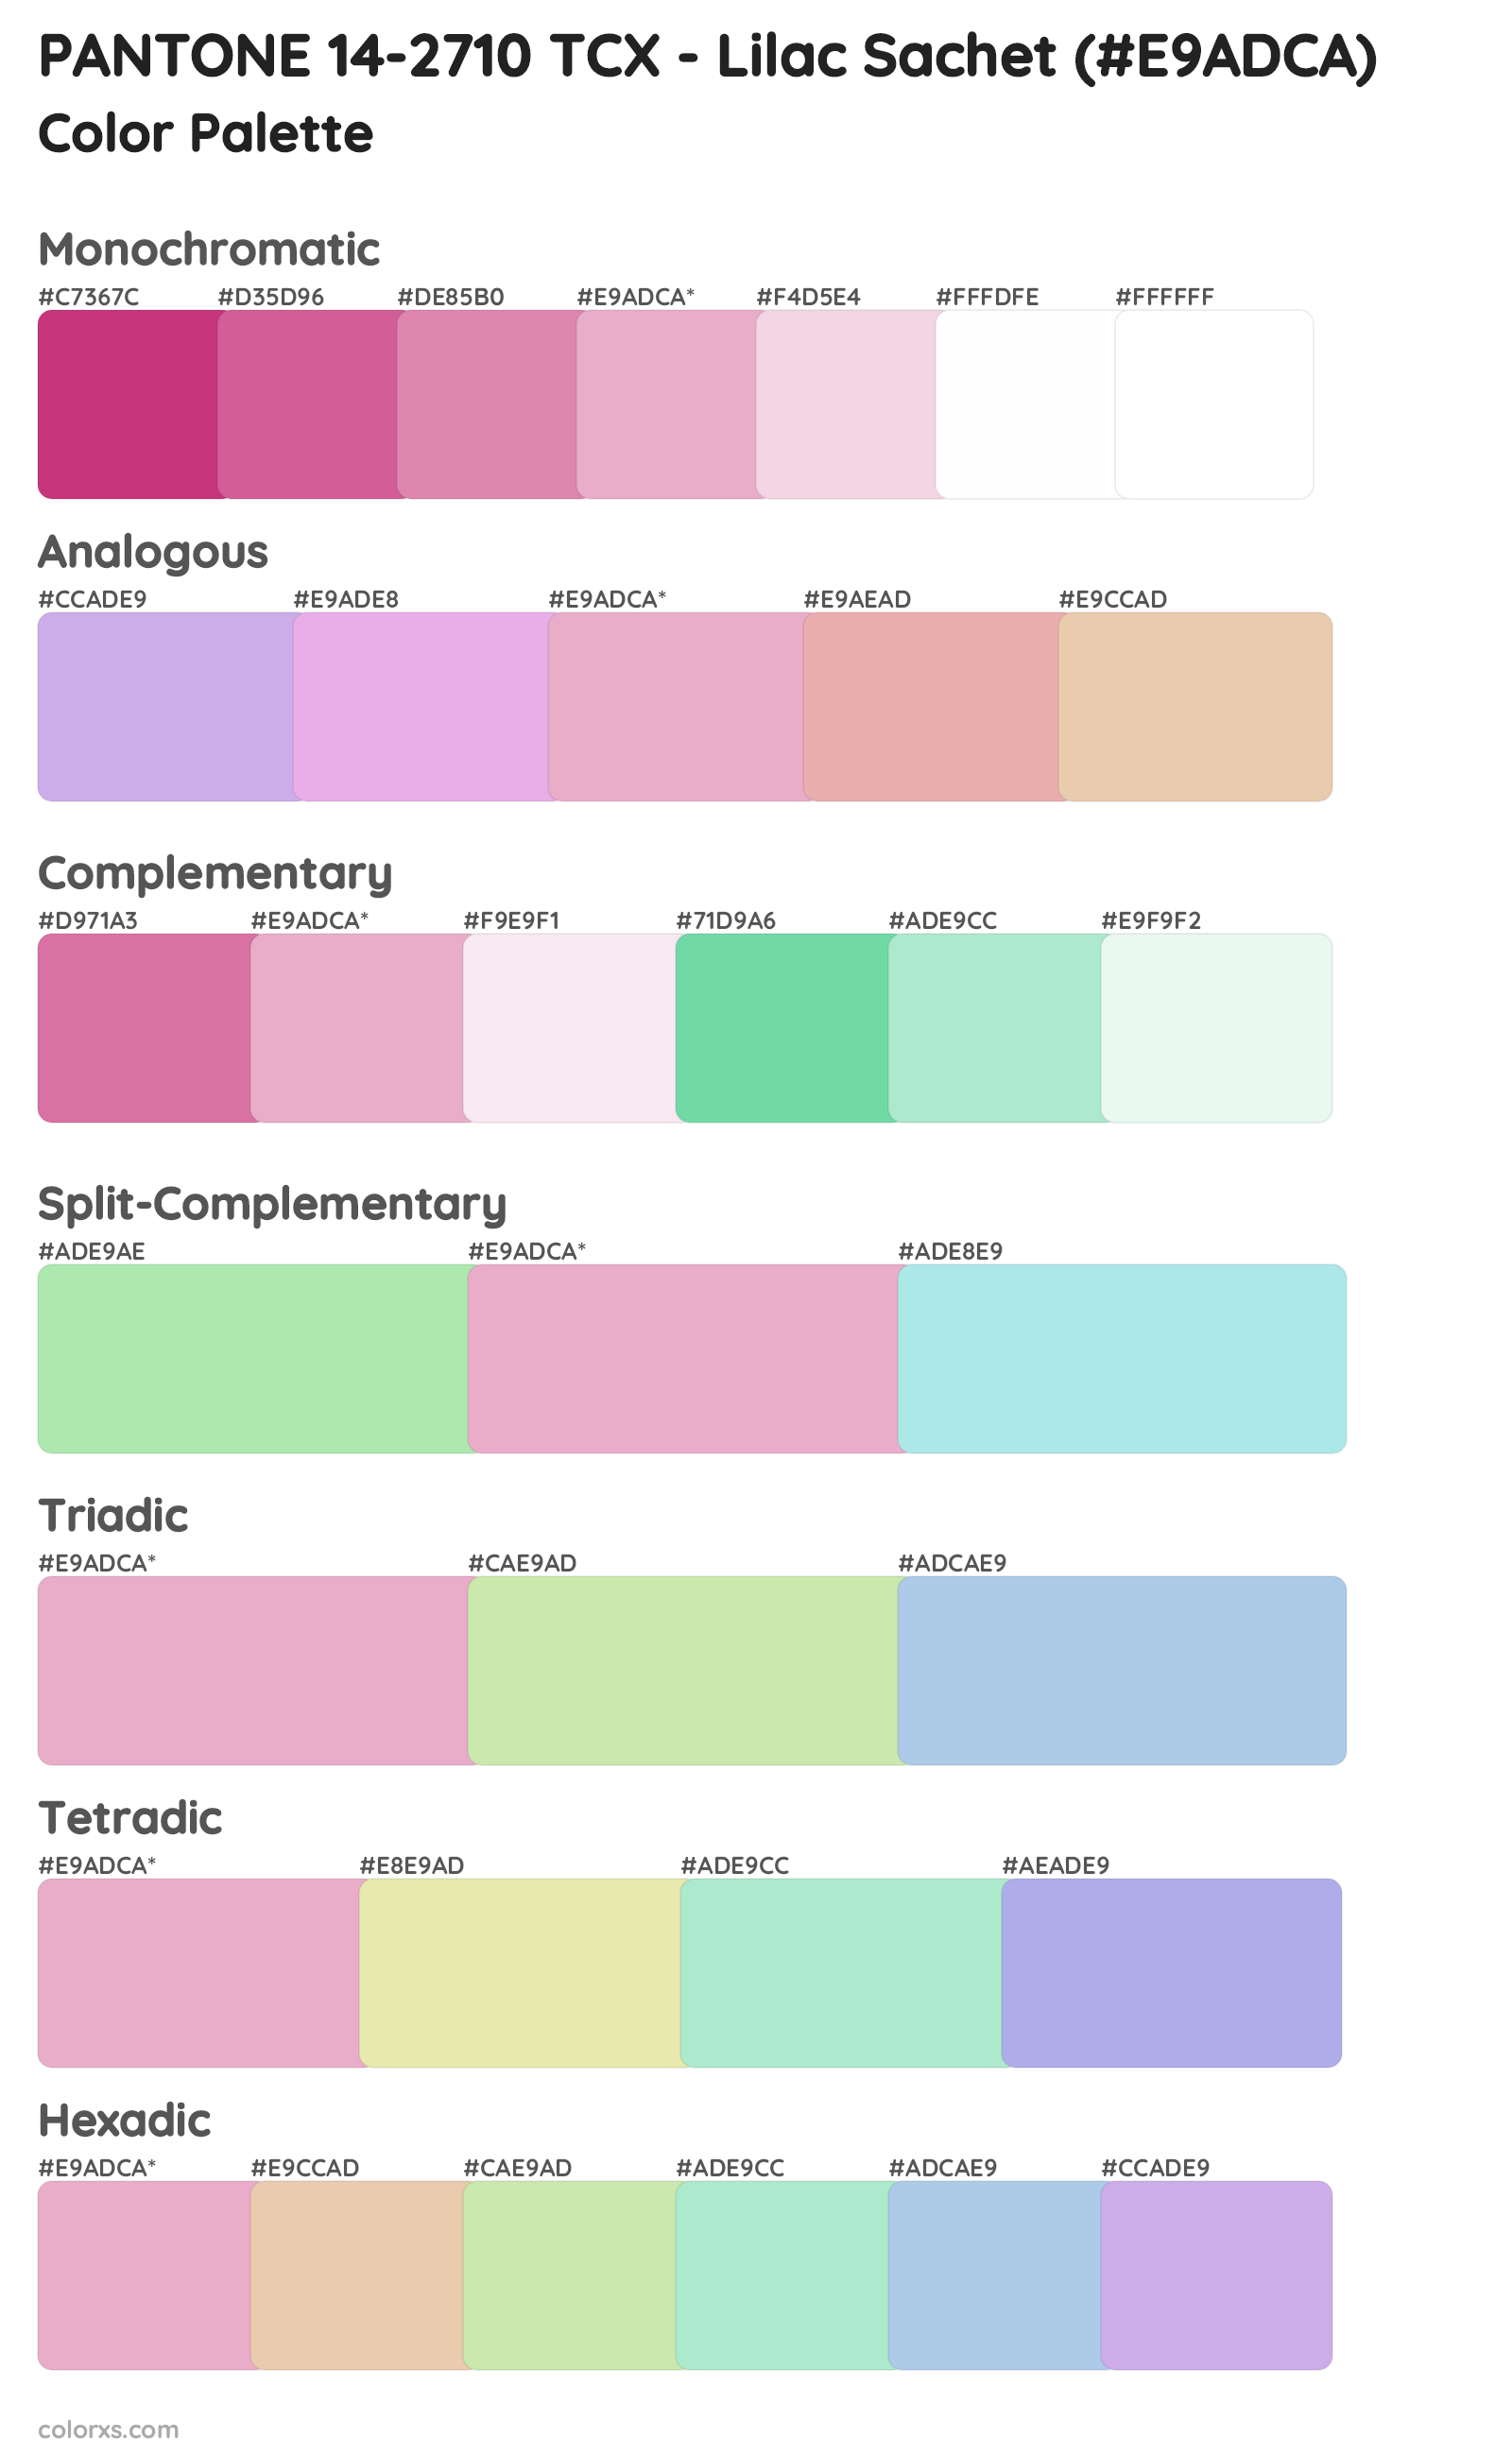 PANTONE 14-2710 TCX - Lilac Sachet Color Scheme Palettes